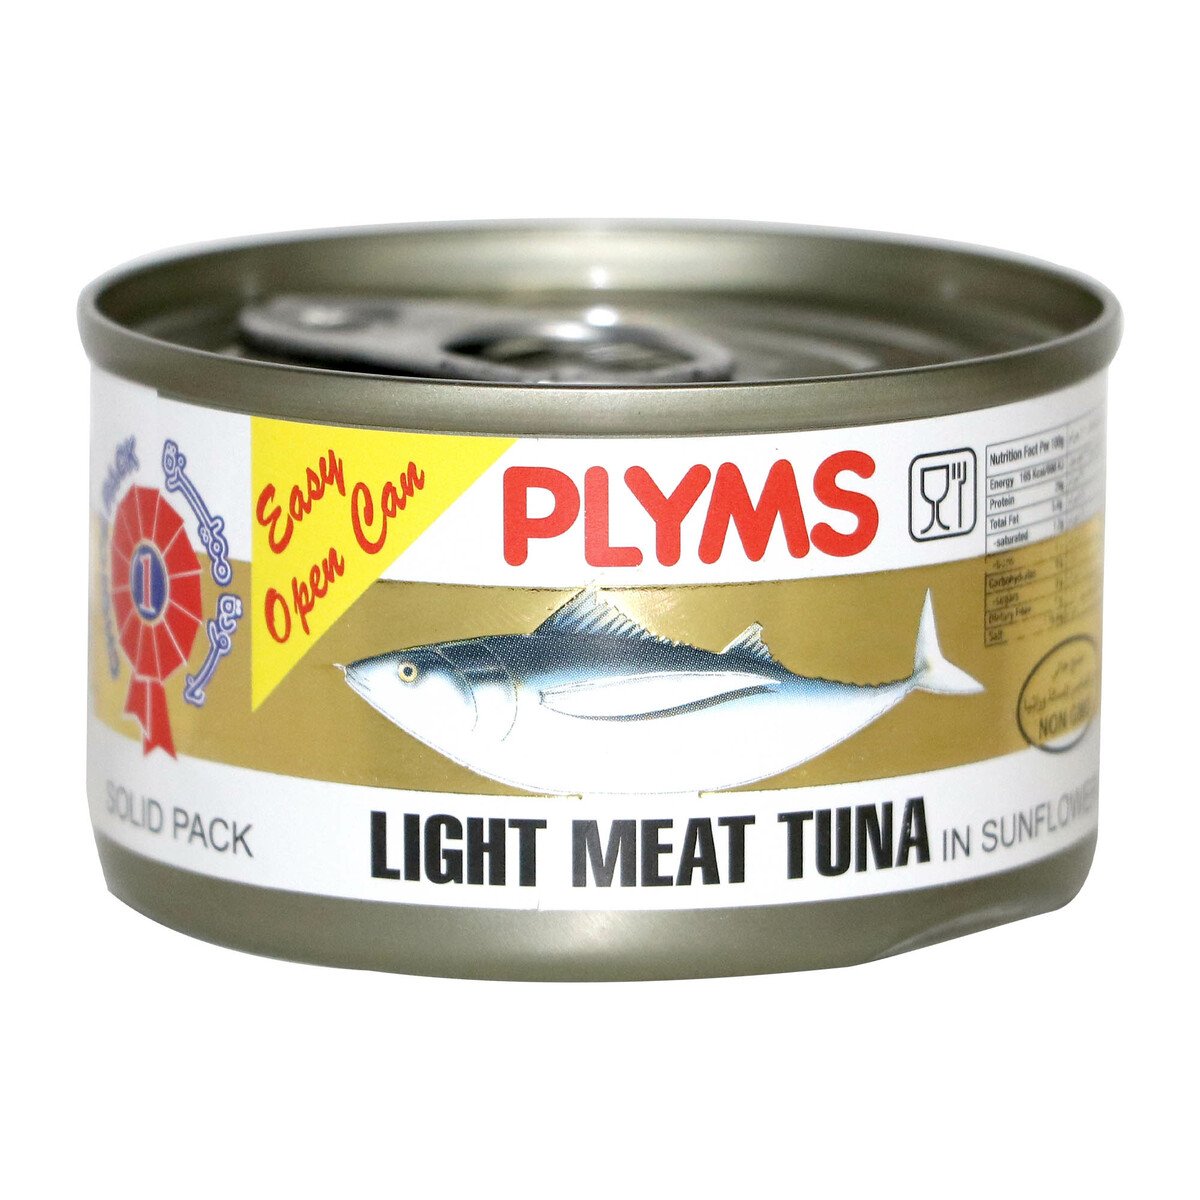 اشتري قم بشراء بليمز لحم تونة خفيف 80 جم Online at Best Price من الموقع - من لولو هايبر ماركت Canned Tuna في السعودية